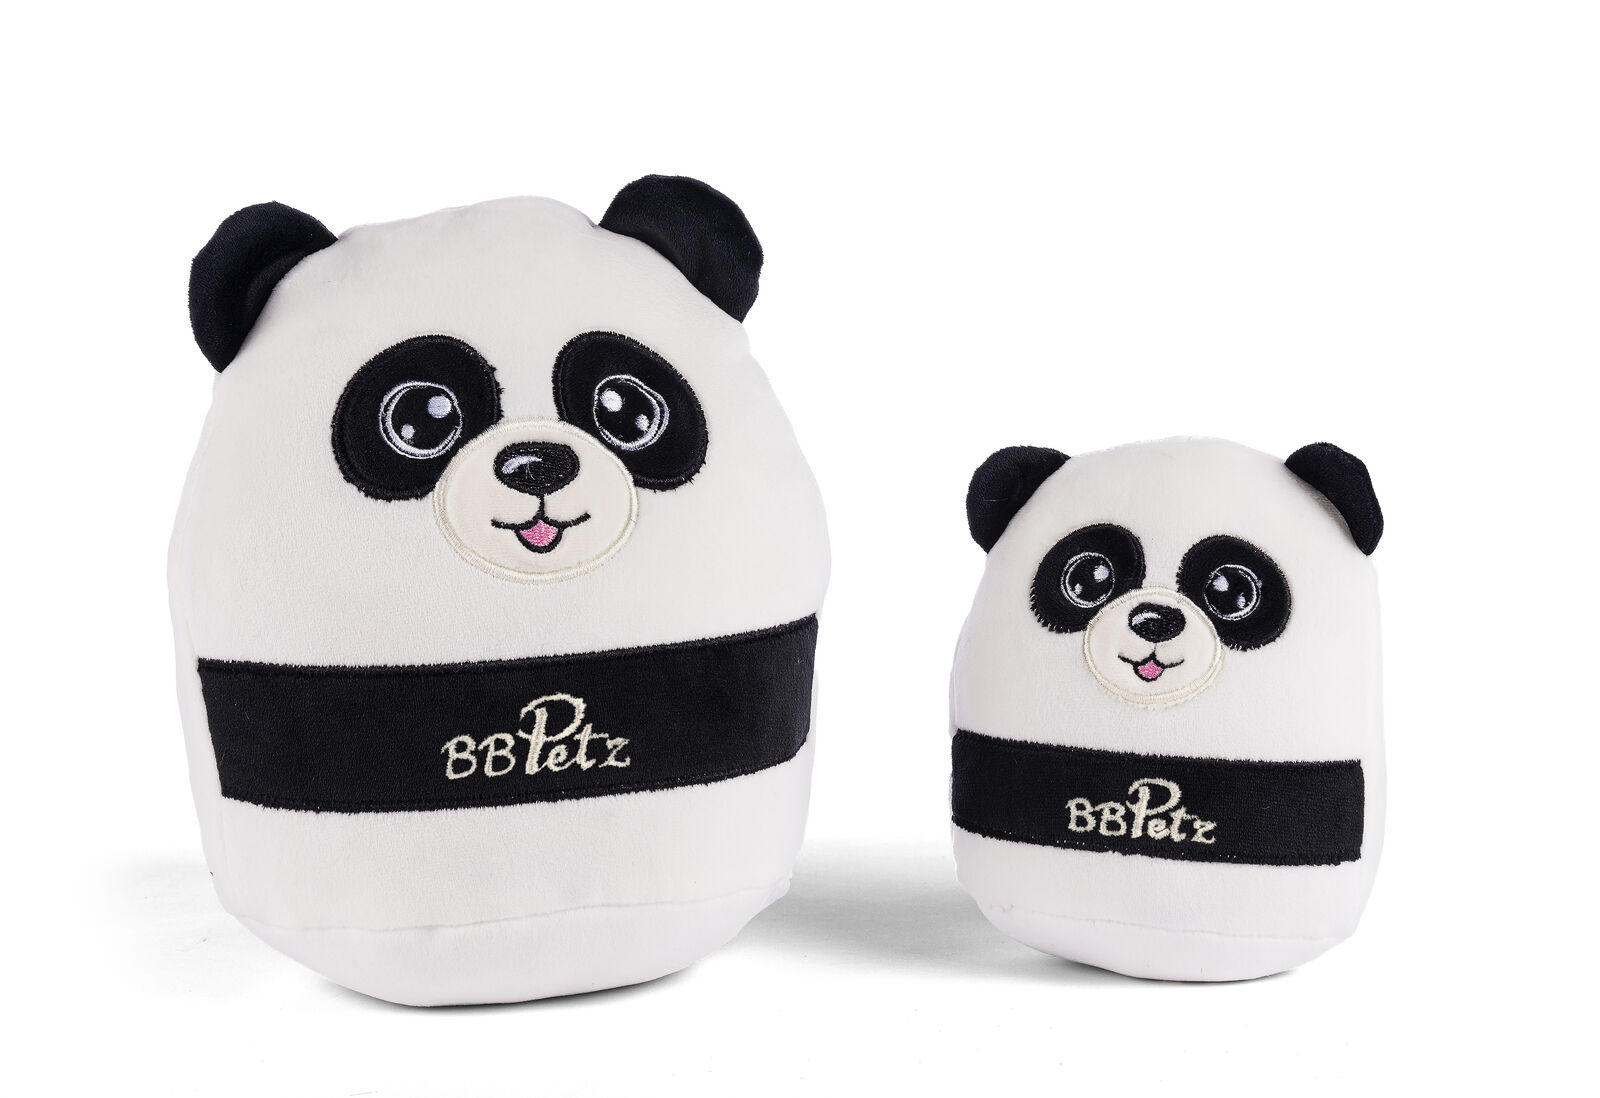 Buy B B Petz - Panda & Cub Set (60311) - White - Panda